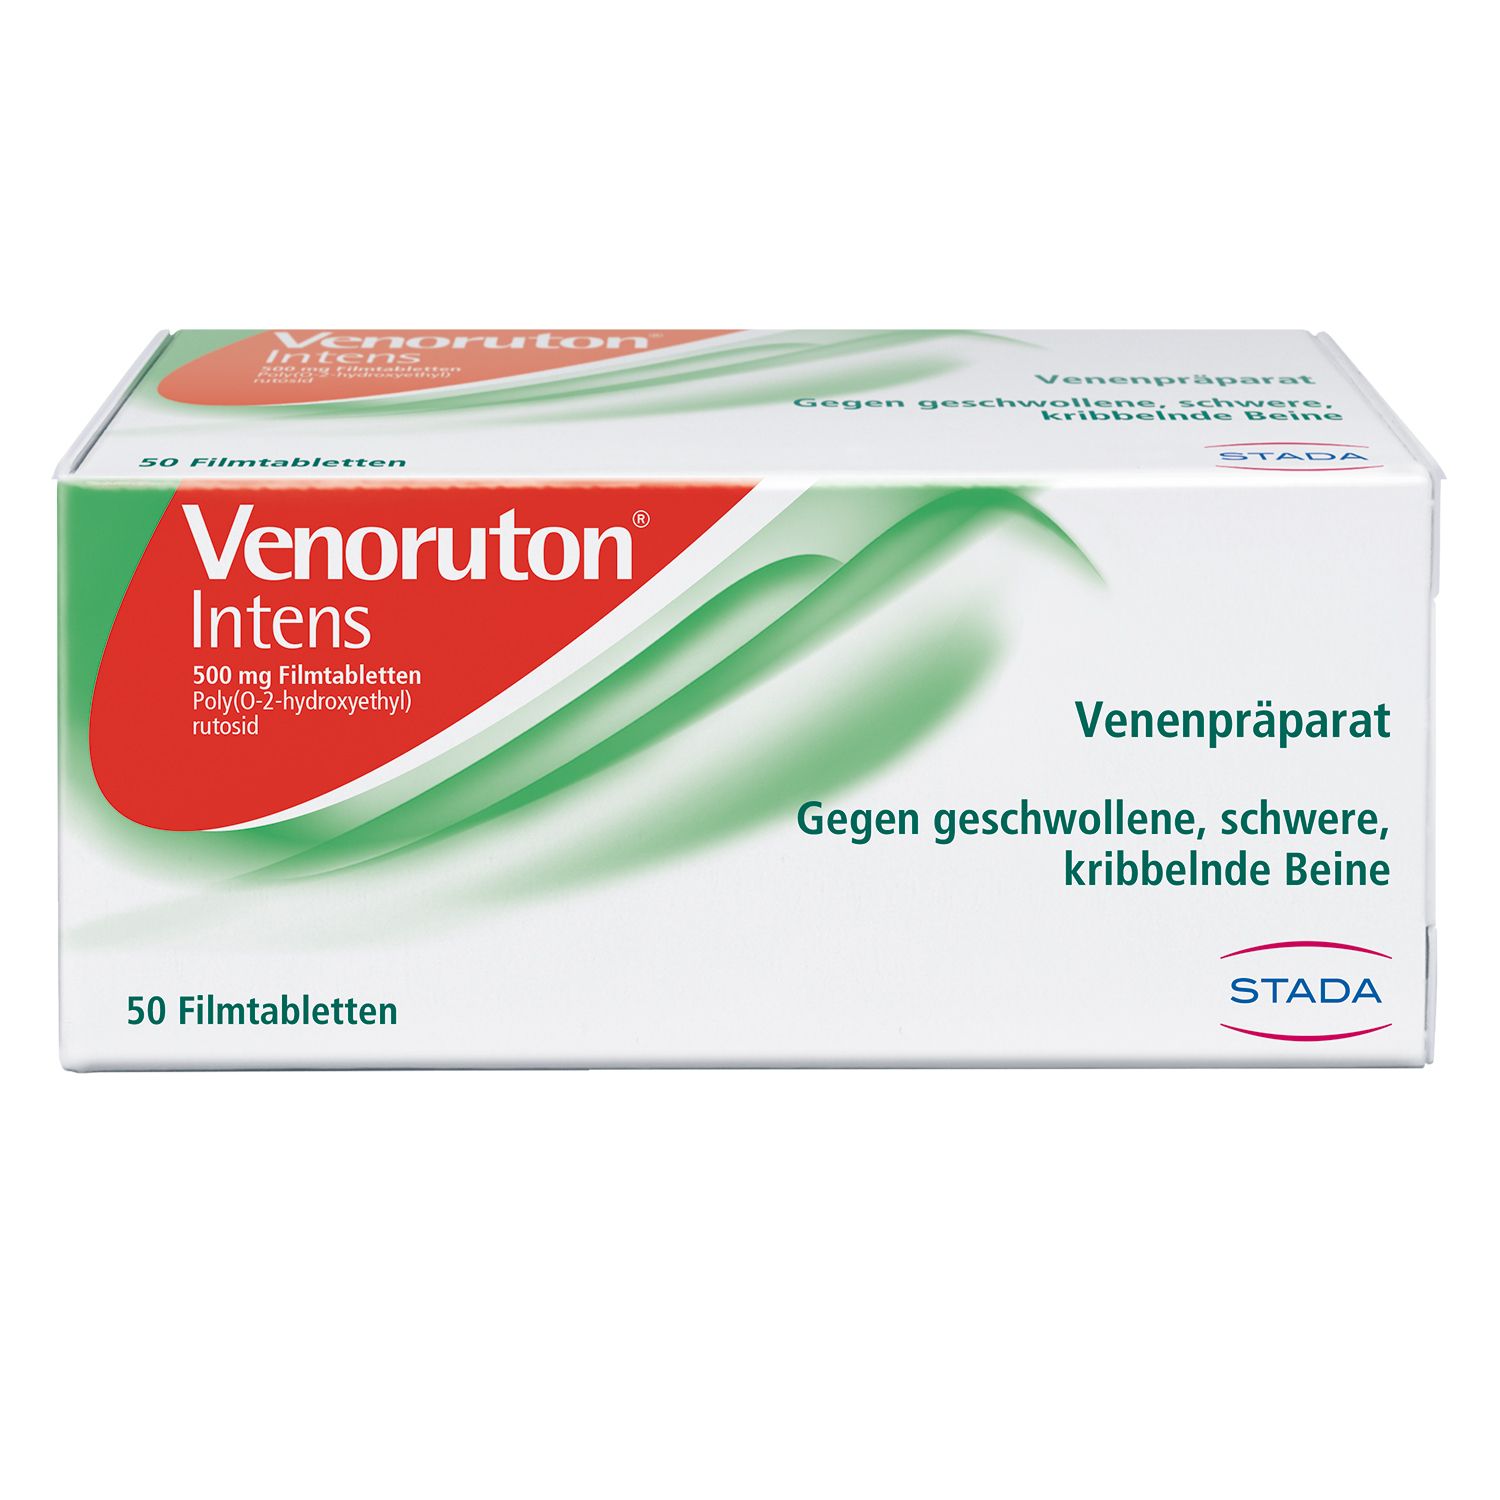 Venoruton® Intens zur Behandlung von Beinschwellungen (Ödemen) und Linderung bei schweren, müden Beinen, Spannungsgefühl